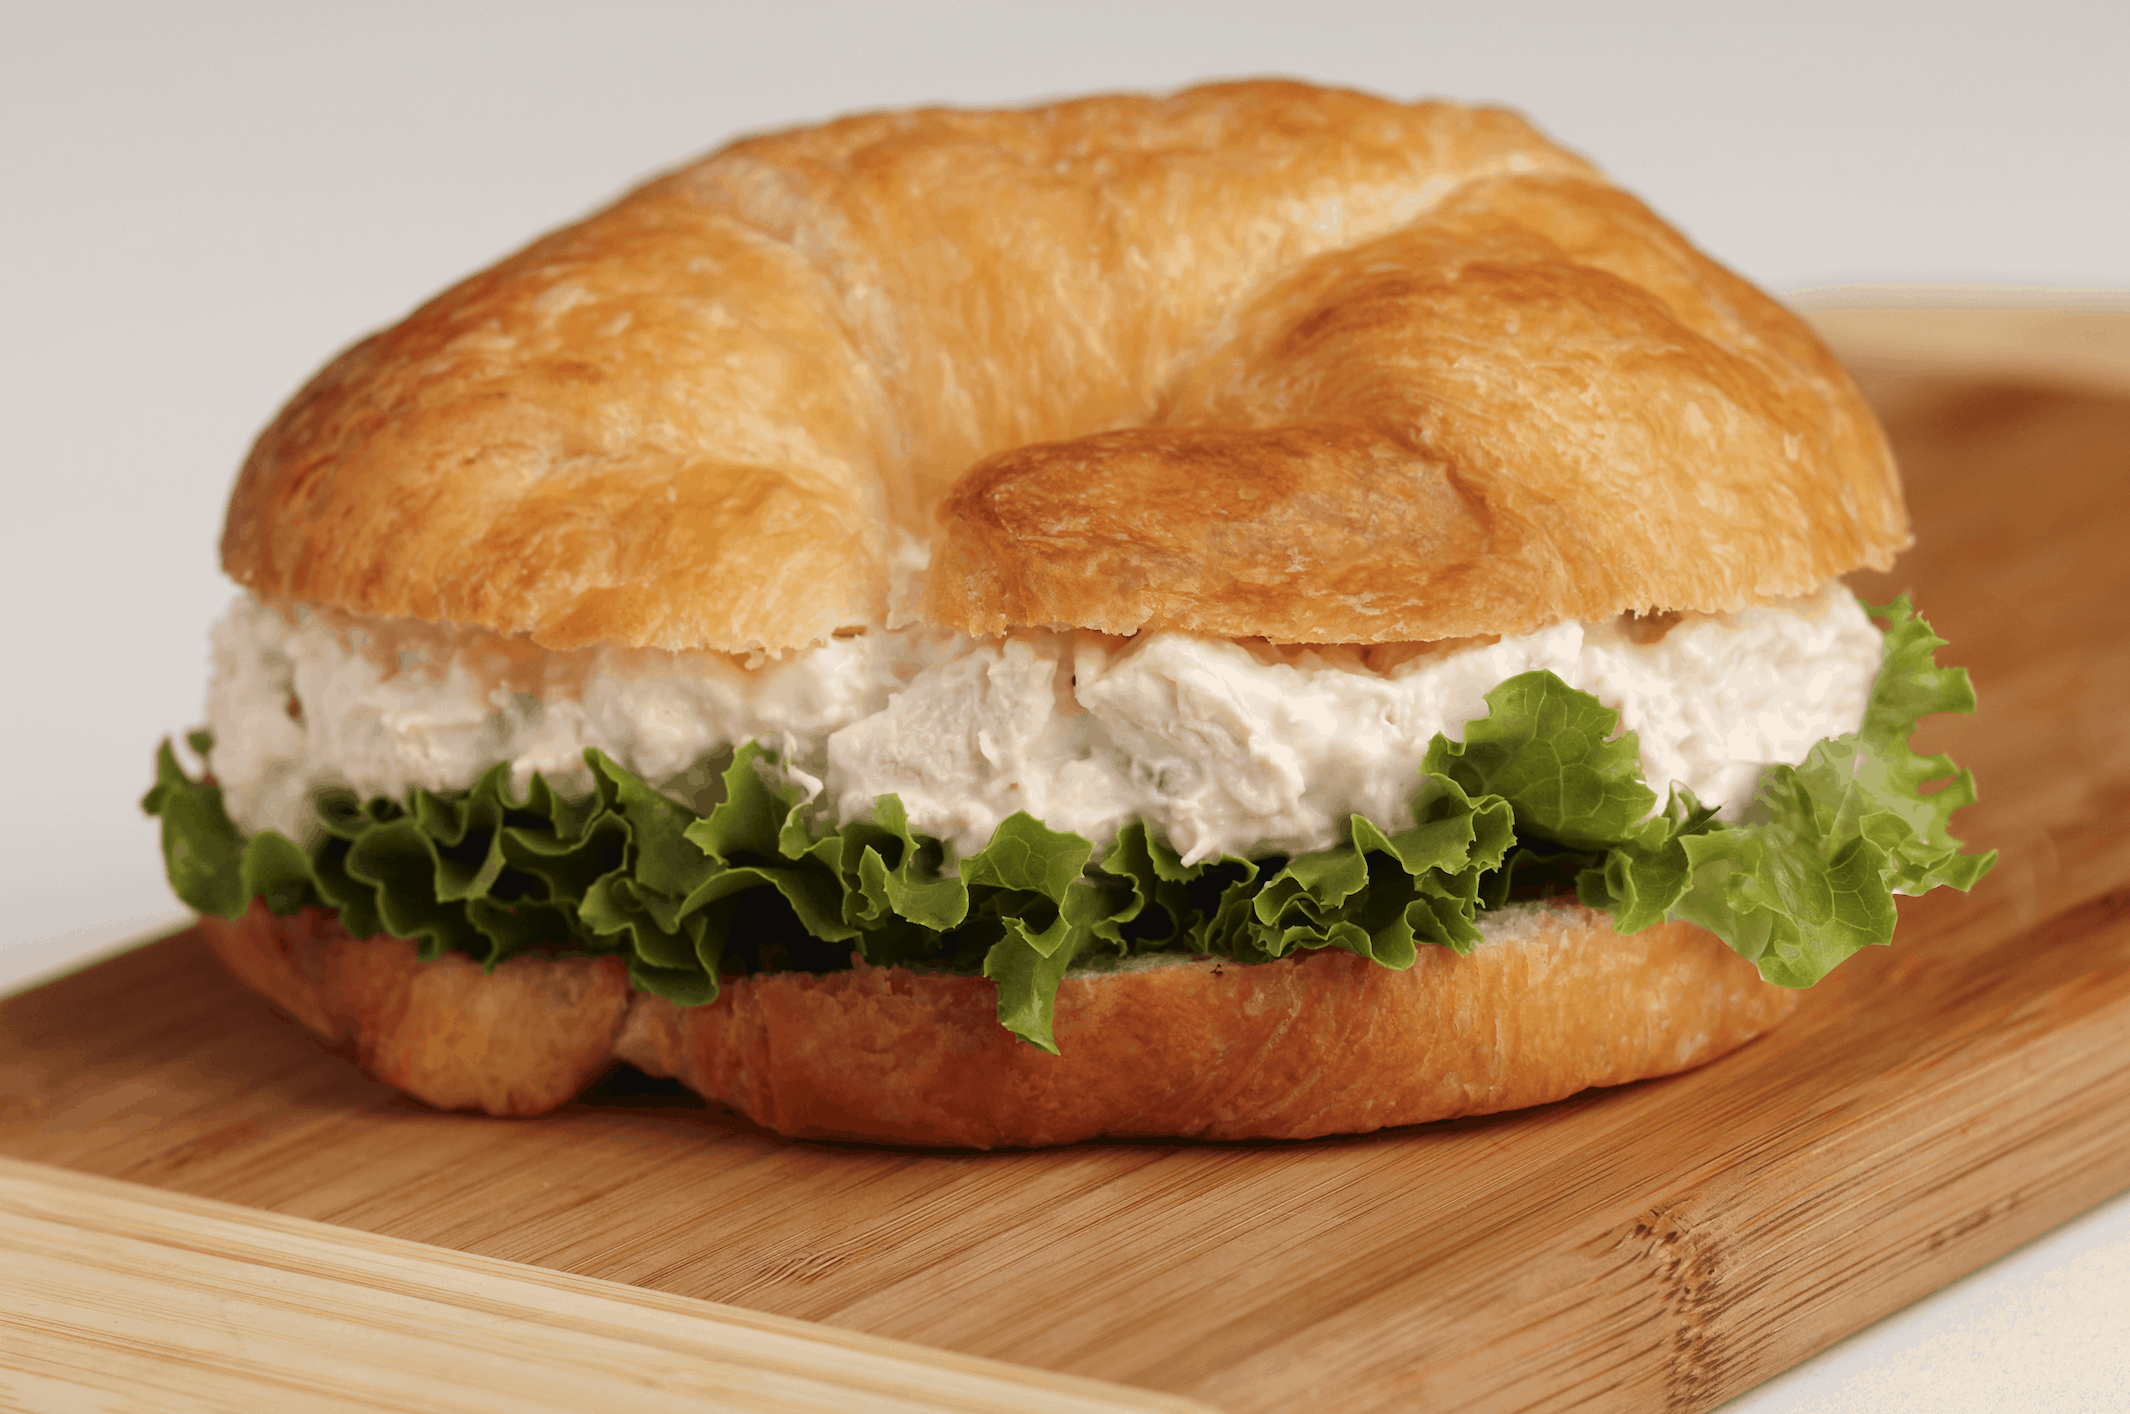 A chicken salad sandwich.